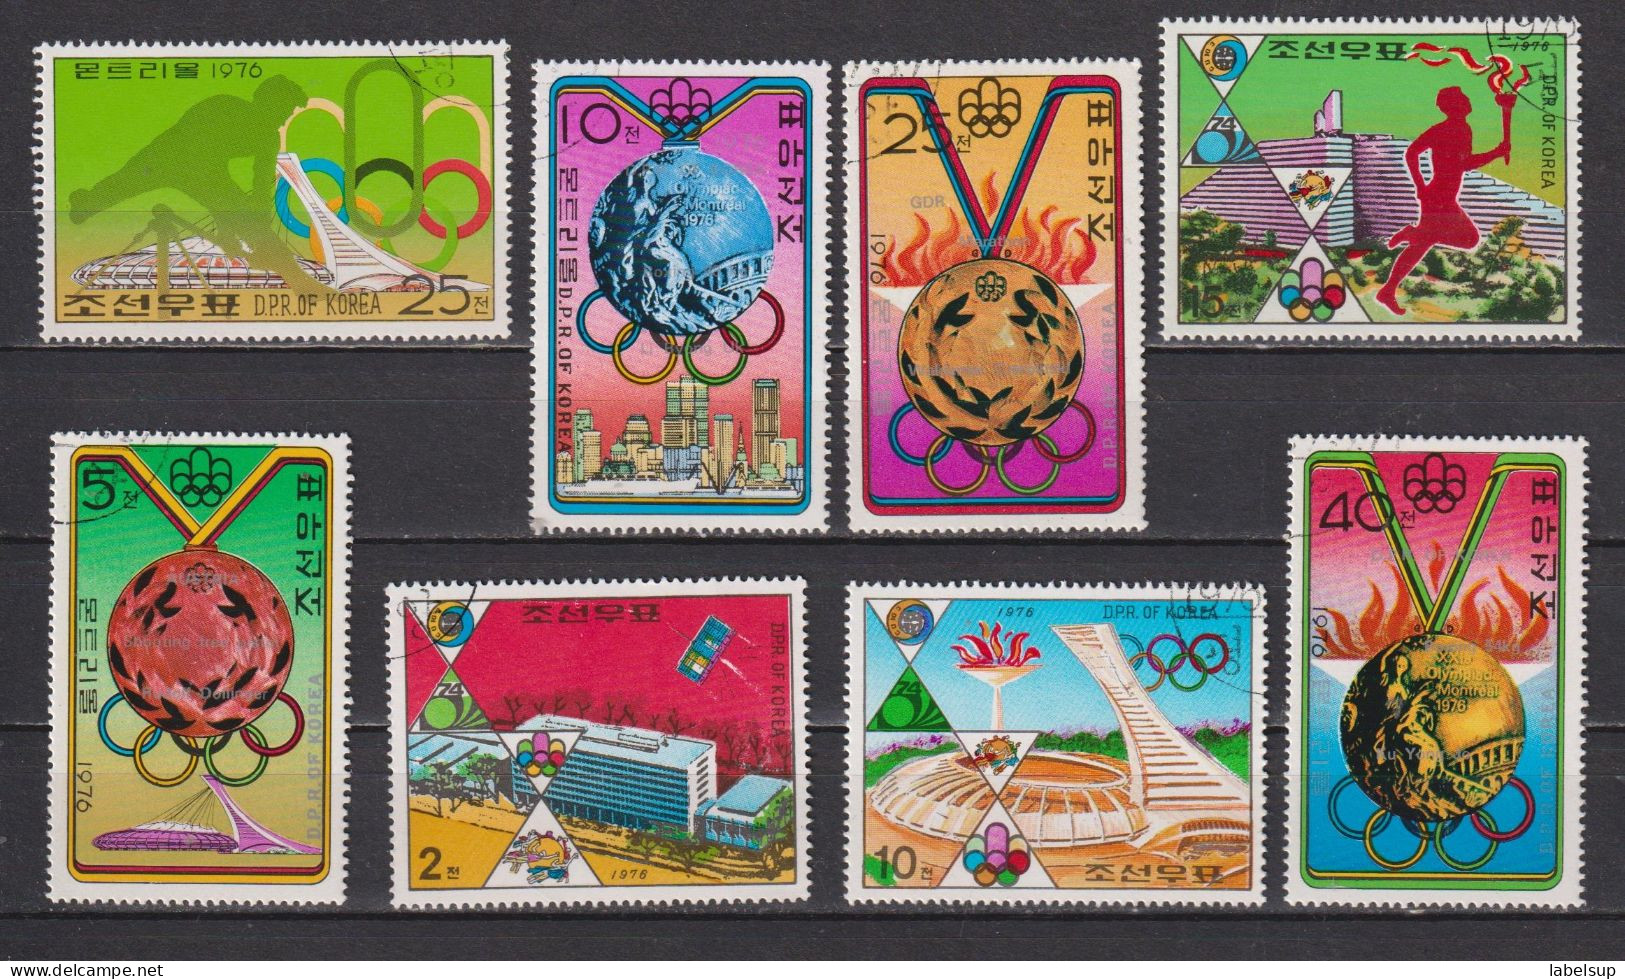 lot de quelques timbres deCorée du nord de 1976